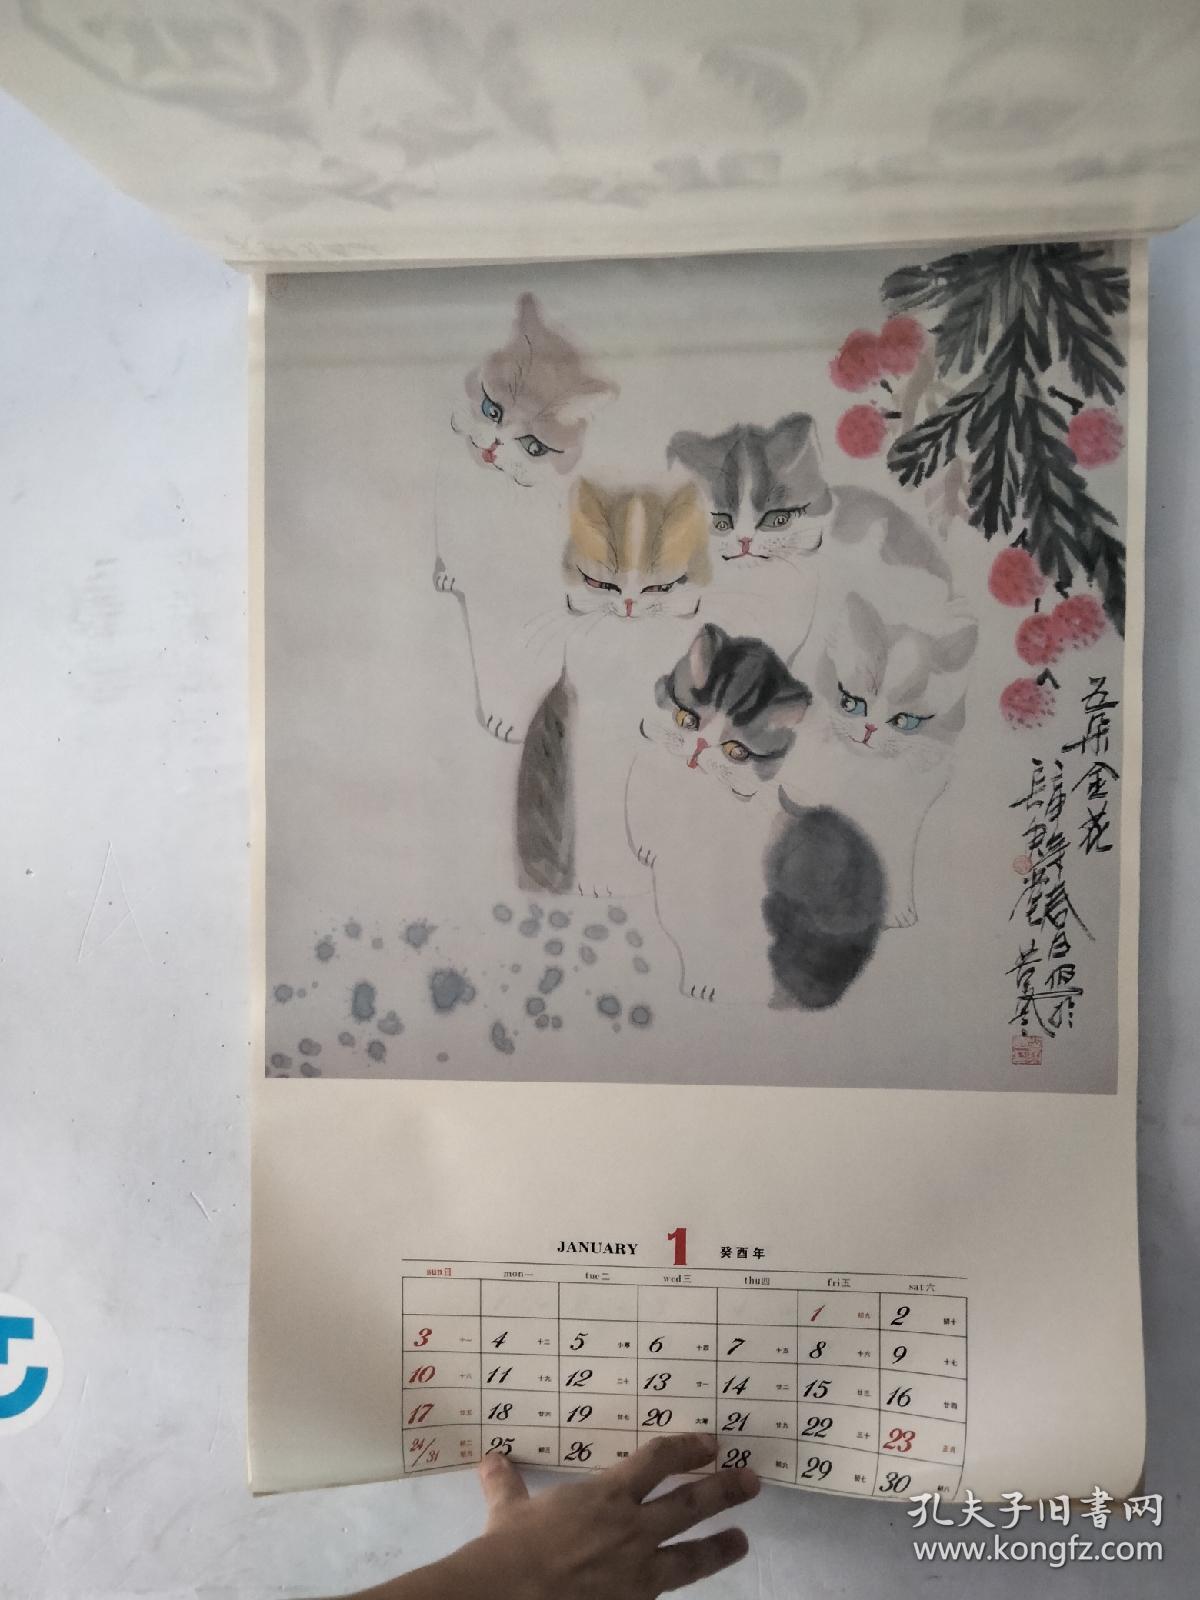 1993年挂历李苦寒中国画 猫 13张全